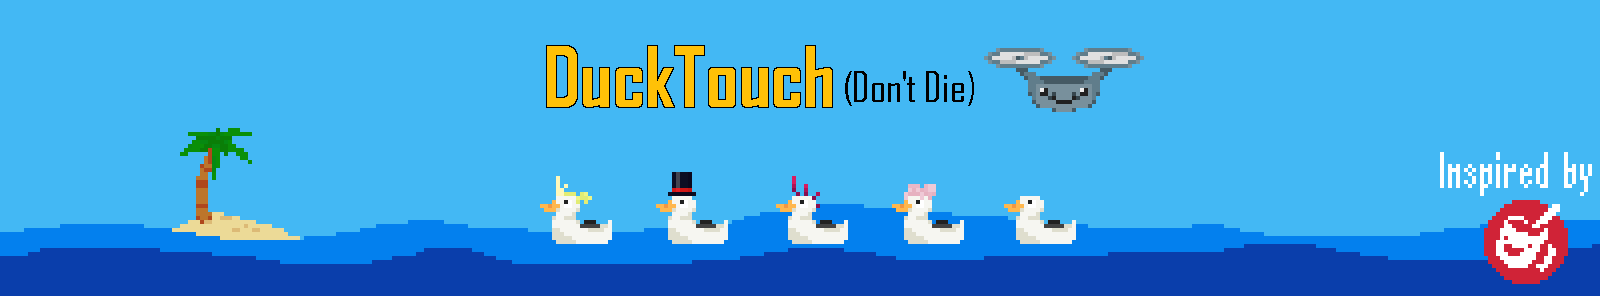 DuckTouch